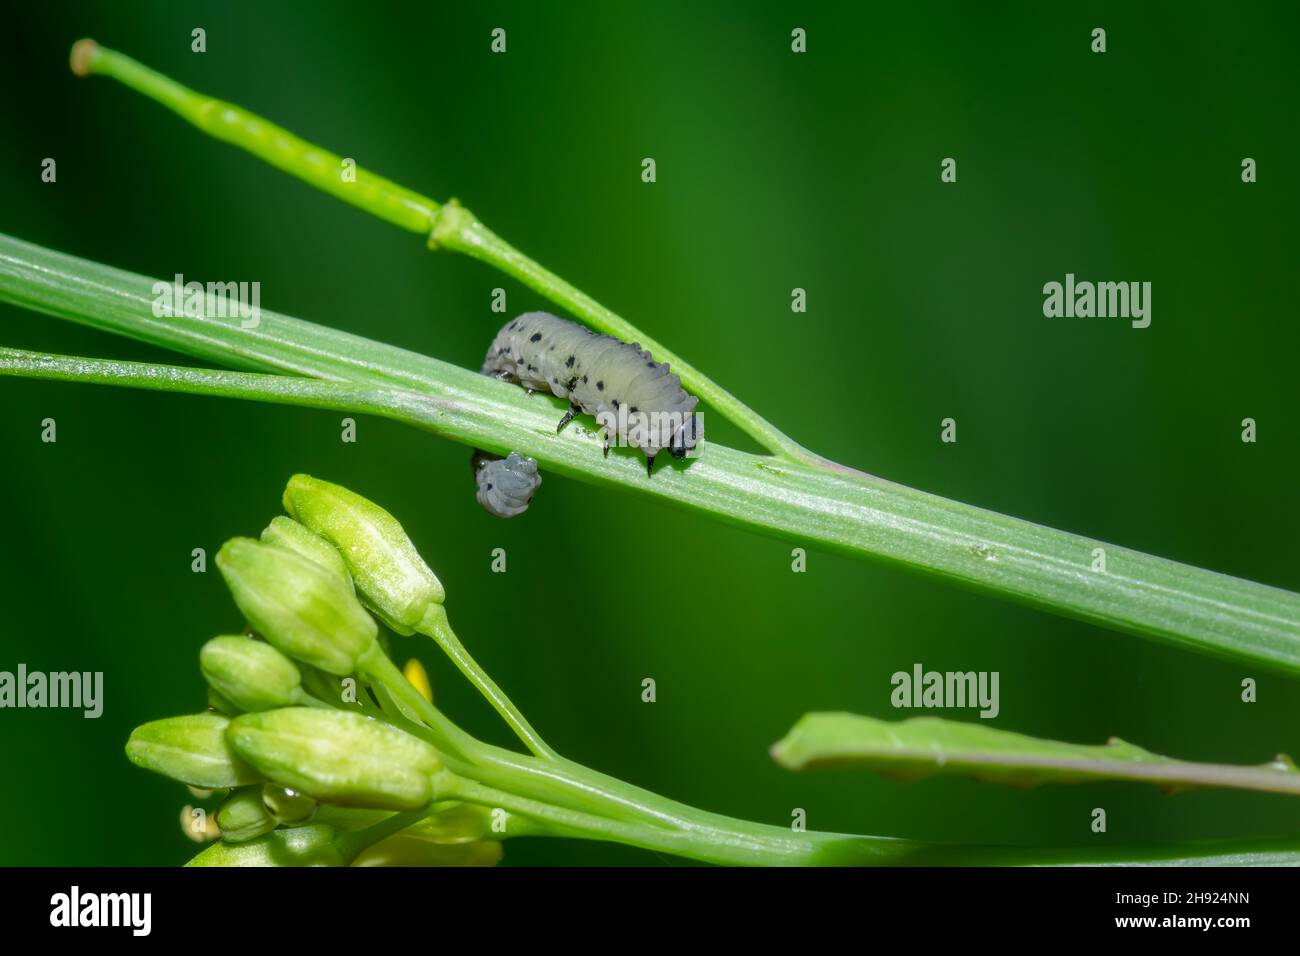 Las larvas de la mosca de la mostaza en la planta de la mostaza. El nombre científico es Athalia lugens, que es una plaga importante de la cosecha de mostaza. Foto de stock